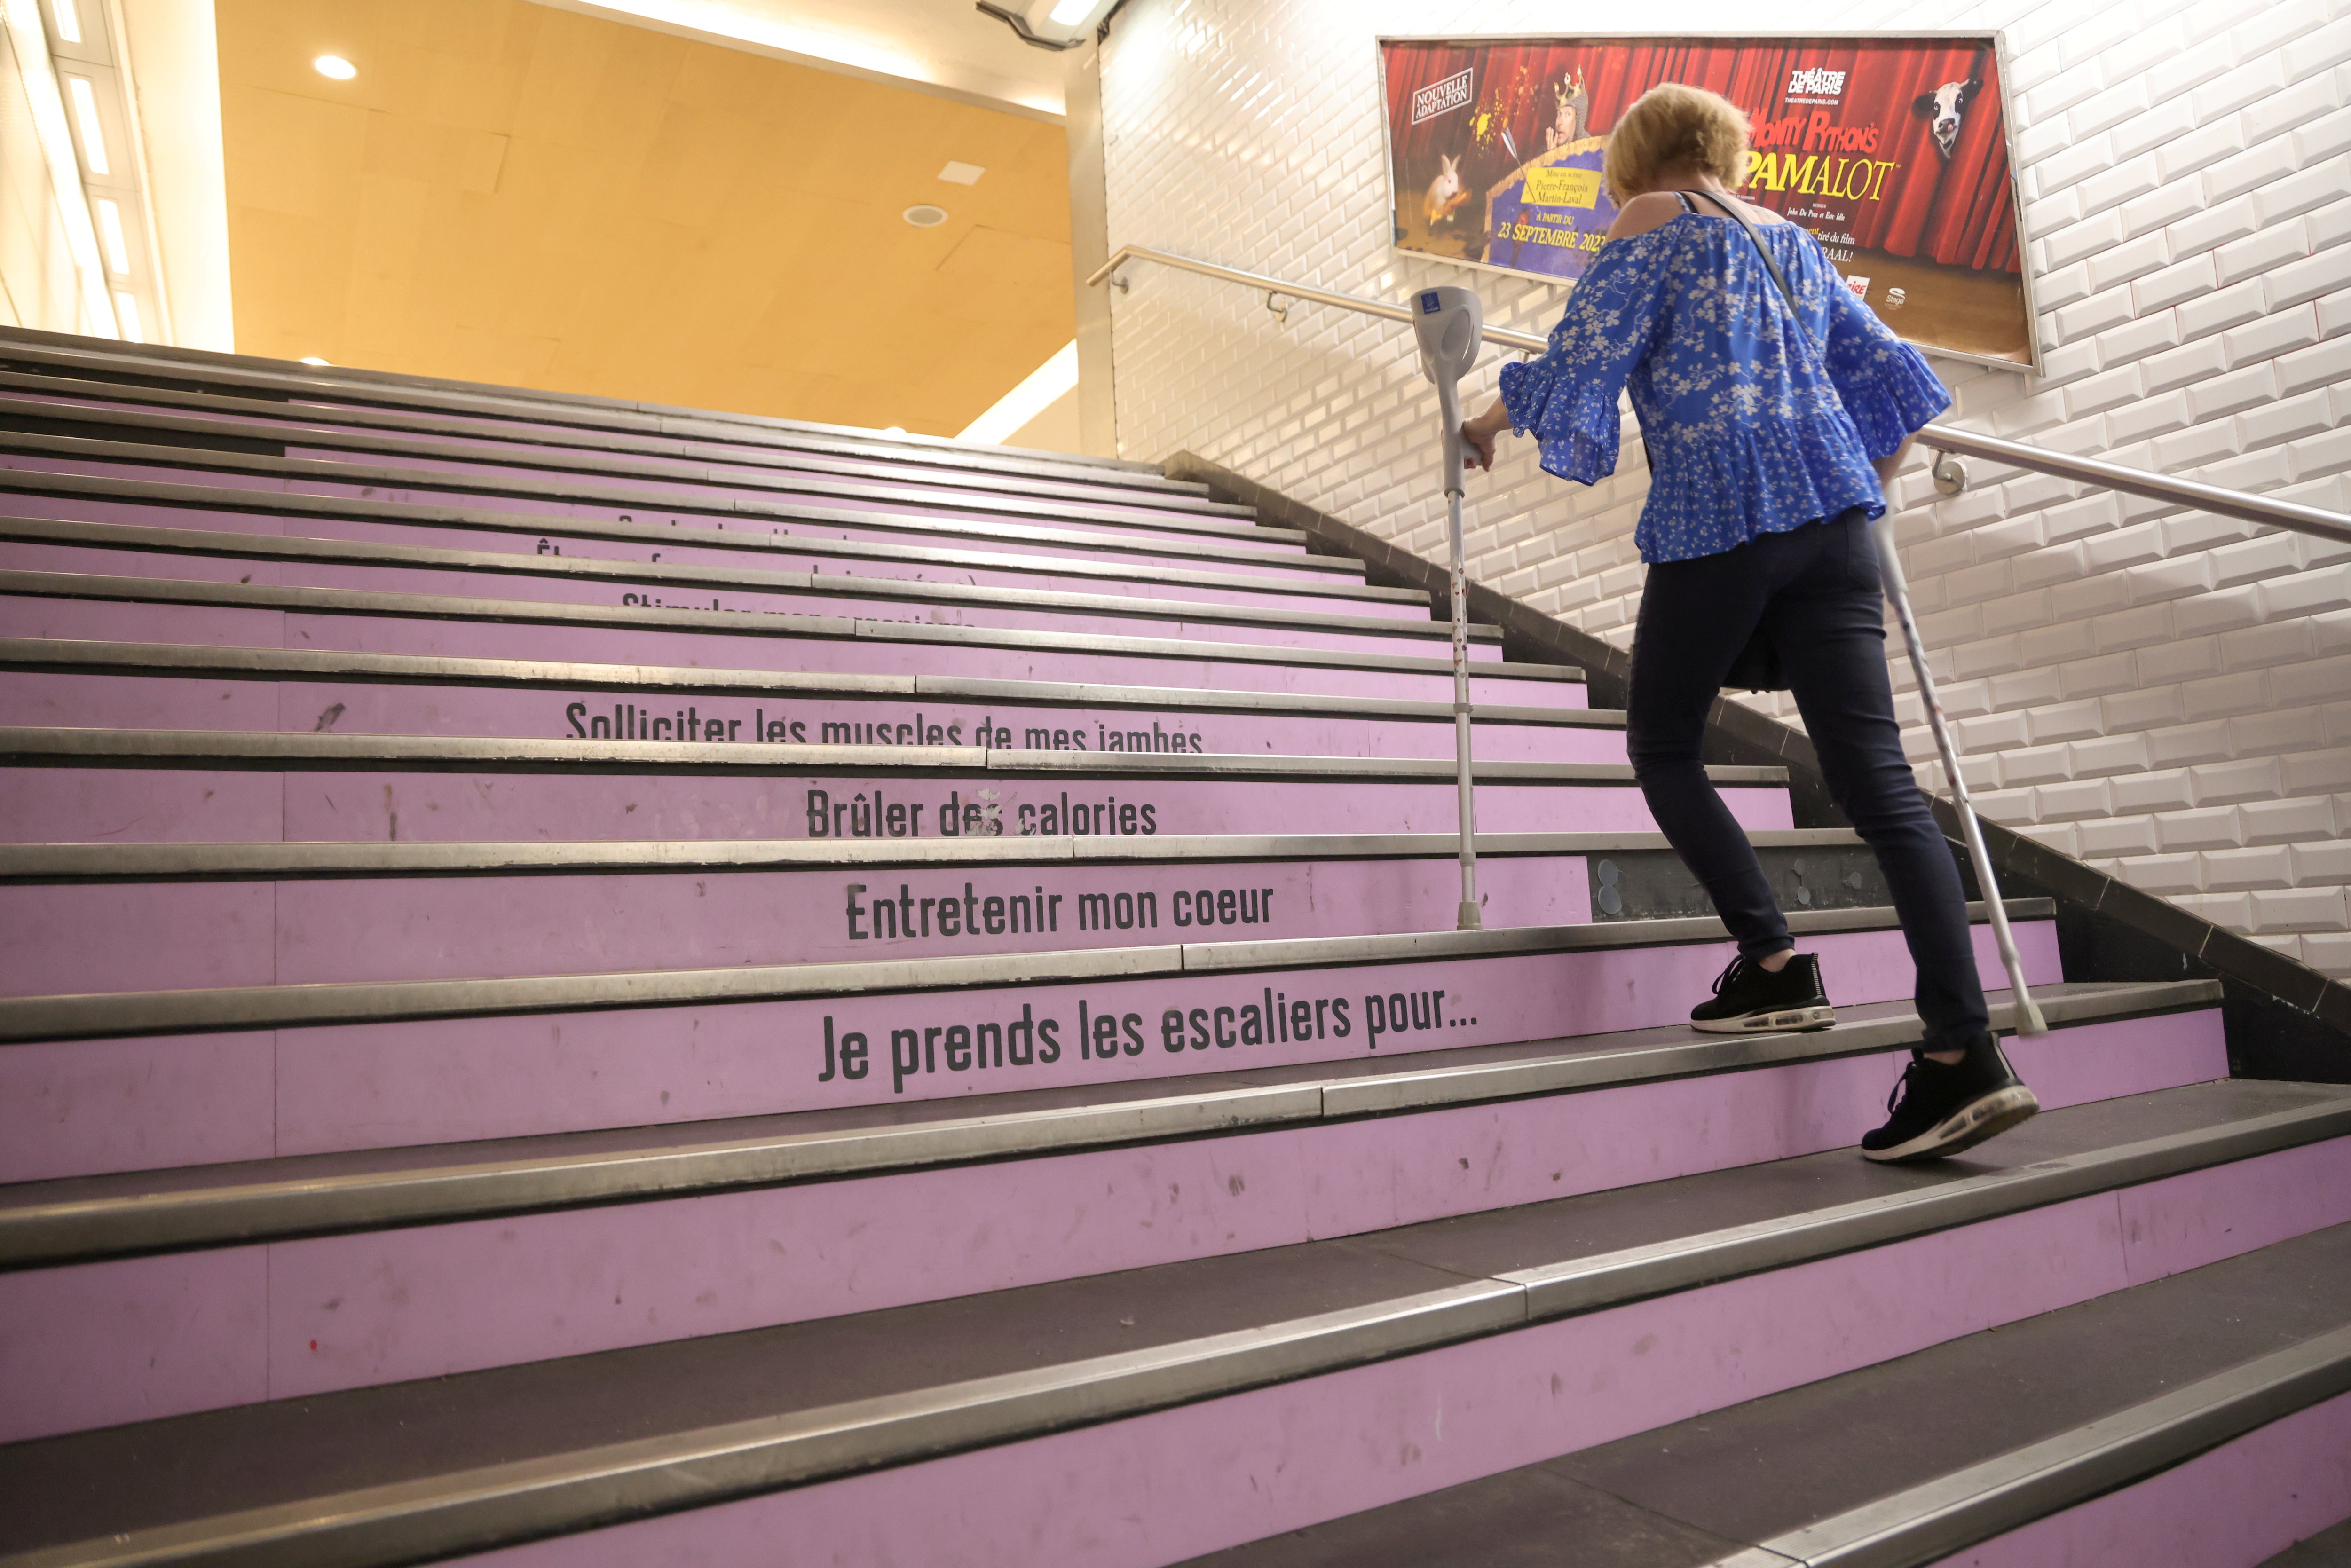 Escalators en panne ou inexistants, pas d'ascenseur... Dans les transports en commun, Aline rencontre de nombreuses difficultés. LP/Philippe Lavieille